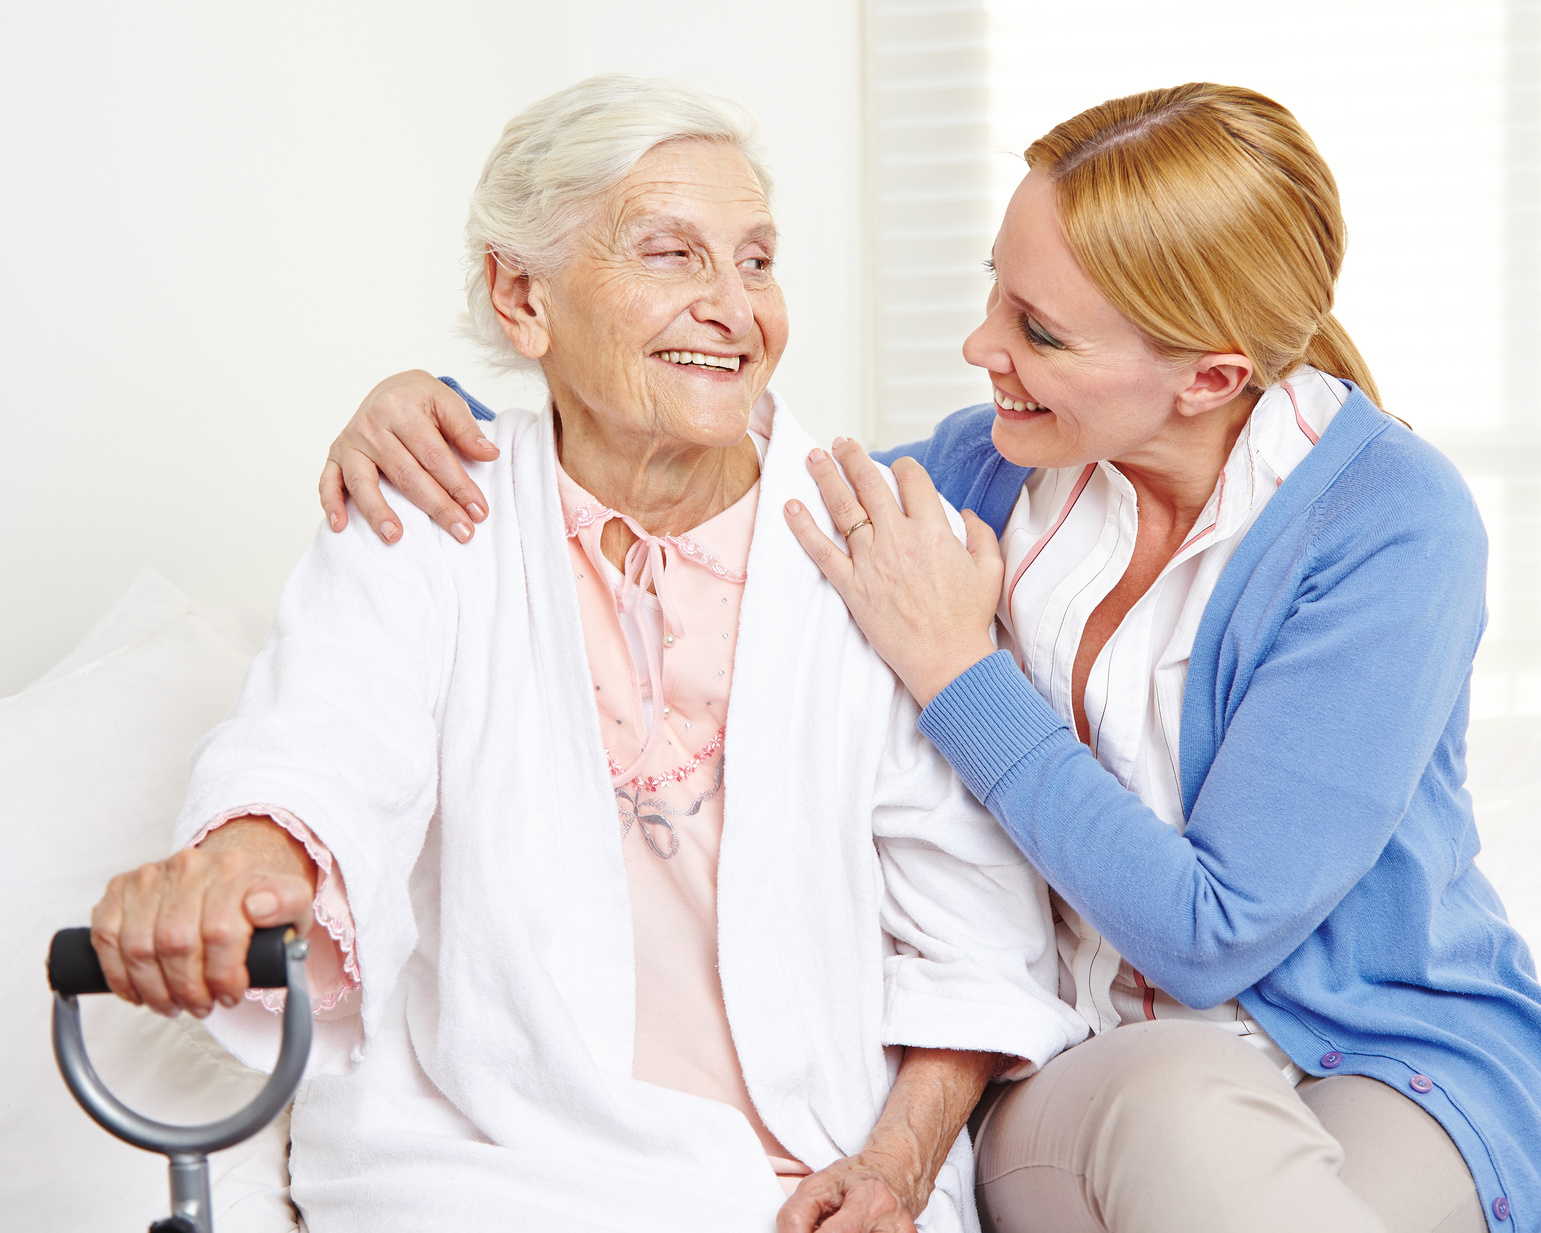 28+ Best Fotos Altenpflege Für Zuhause - Auch das MIA-Team appelliert an Euch: „Wir bleiben für ... : Ebenfalls möglich ist die altenpflege zu hause durch einen familienangehörigen.